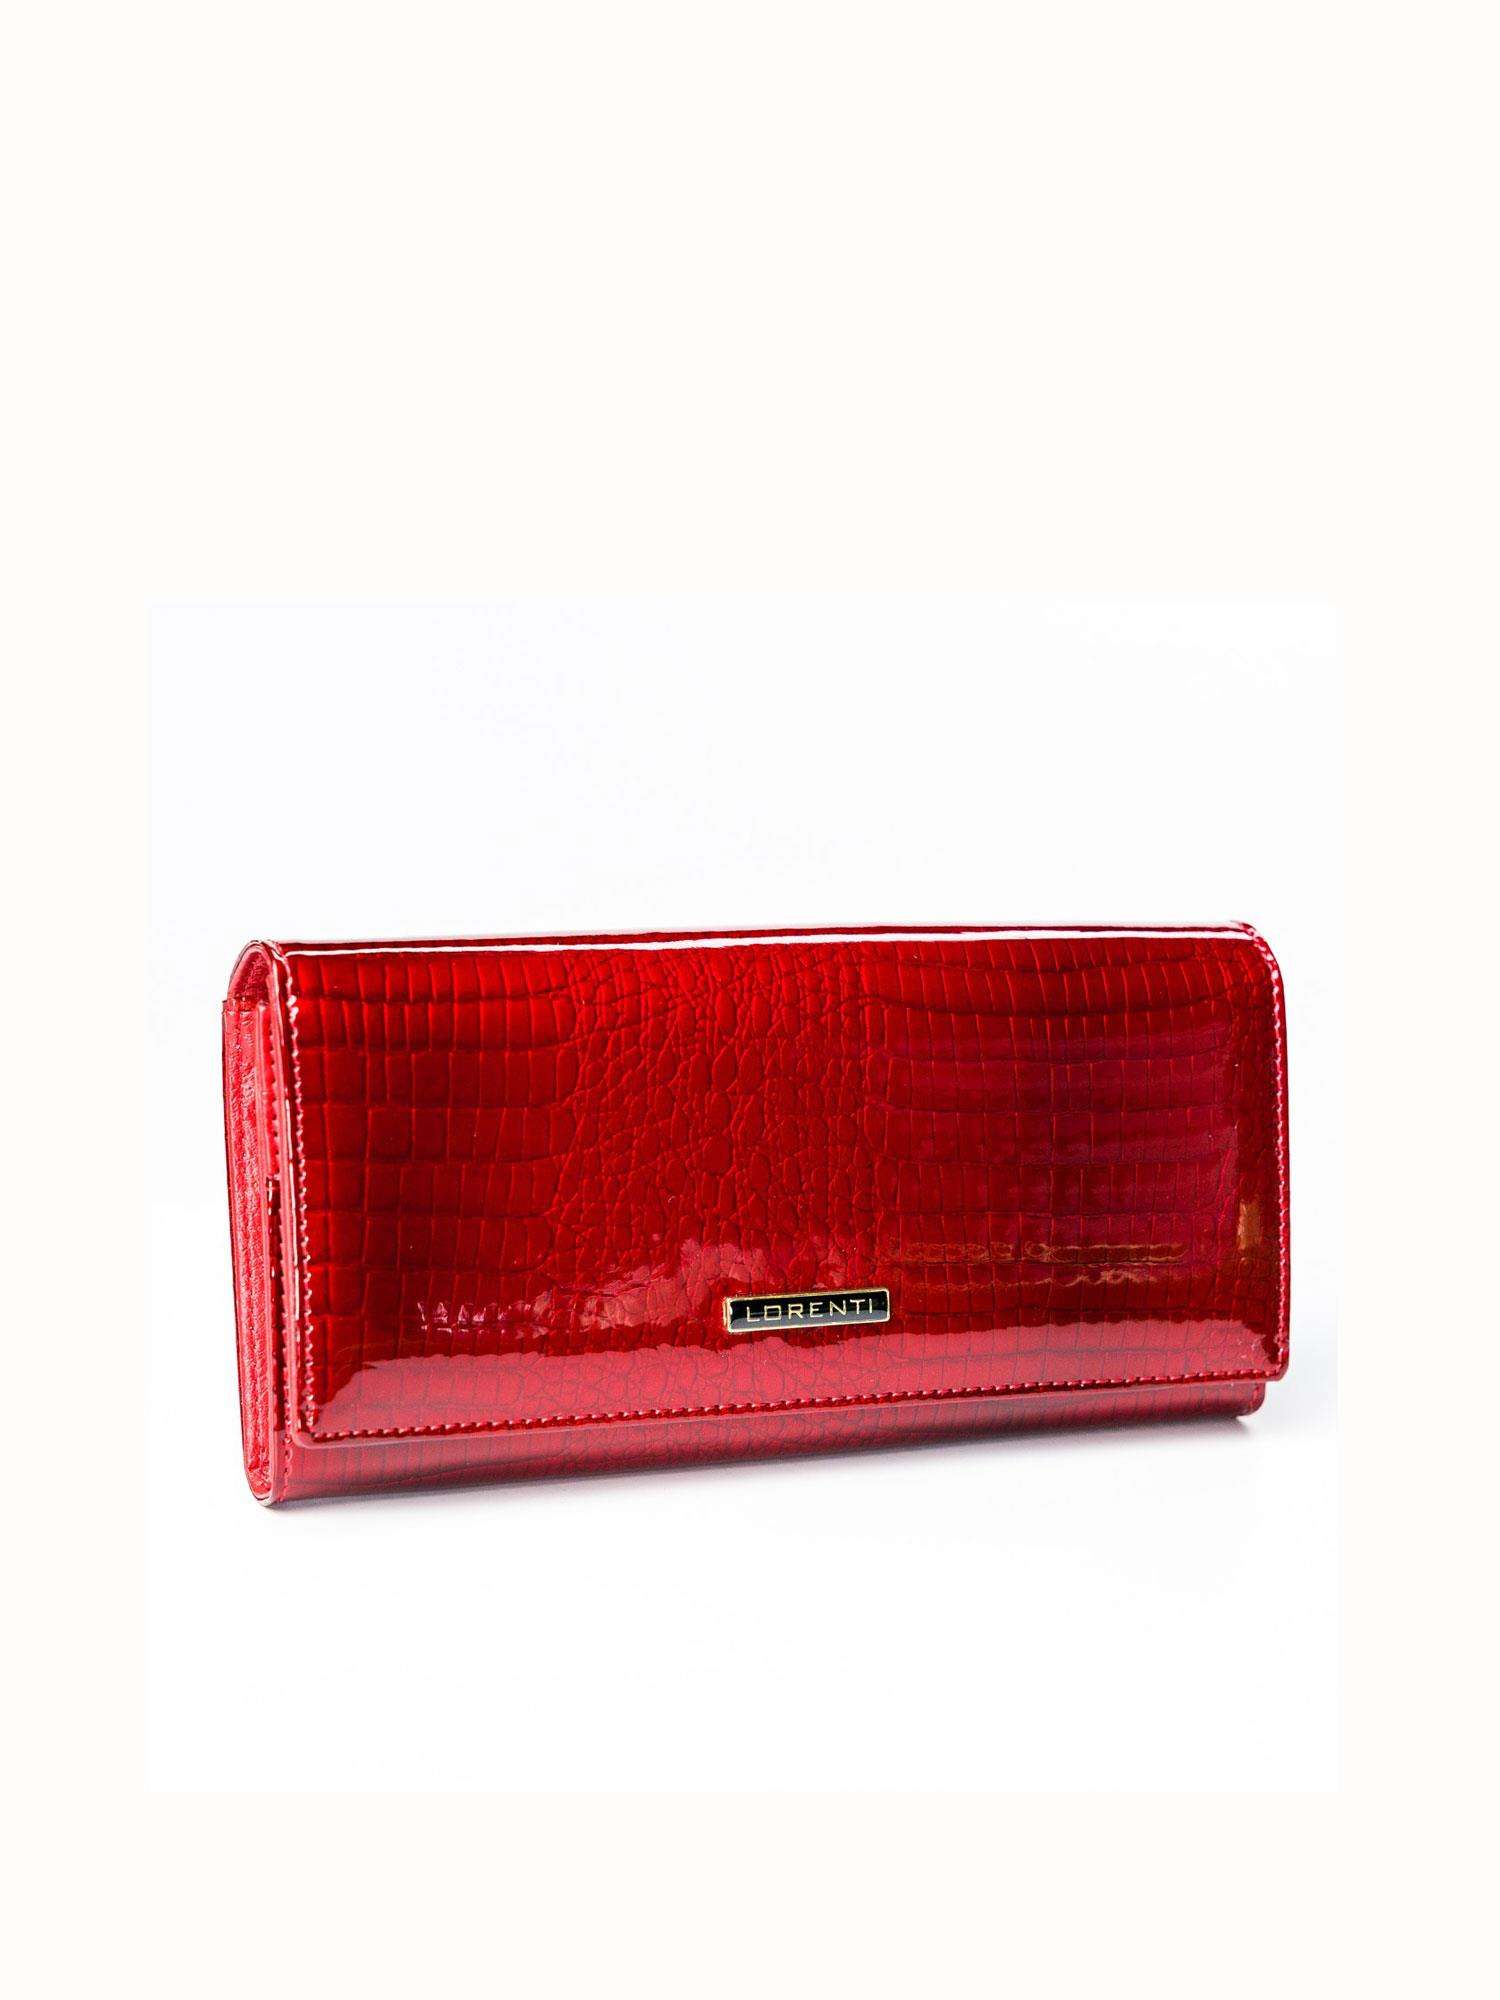 Ženy Peňaženky - A large red leather wallet